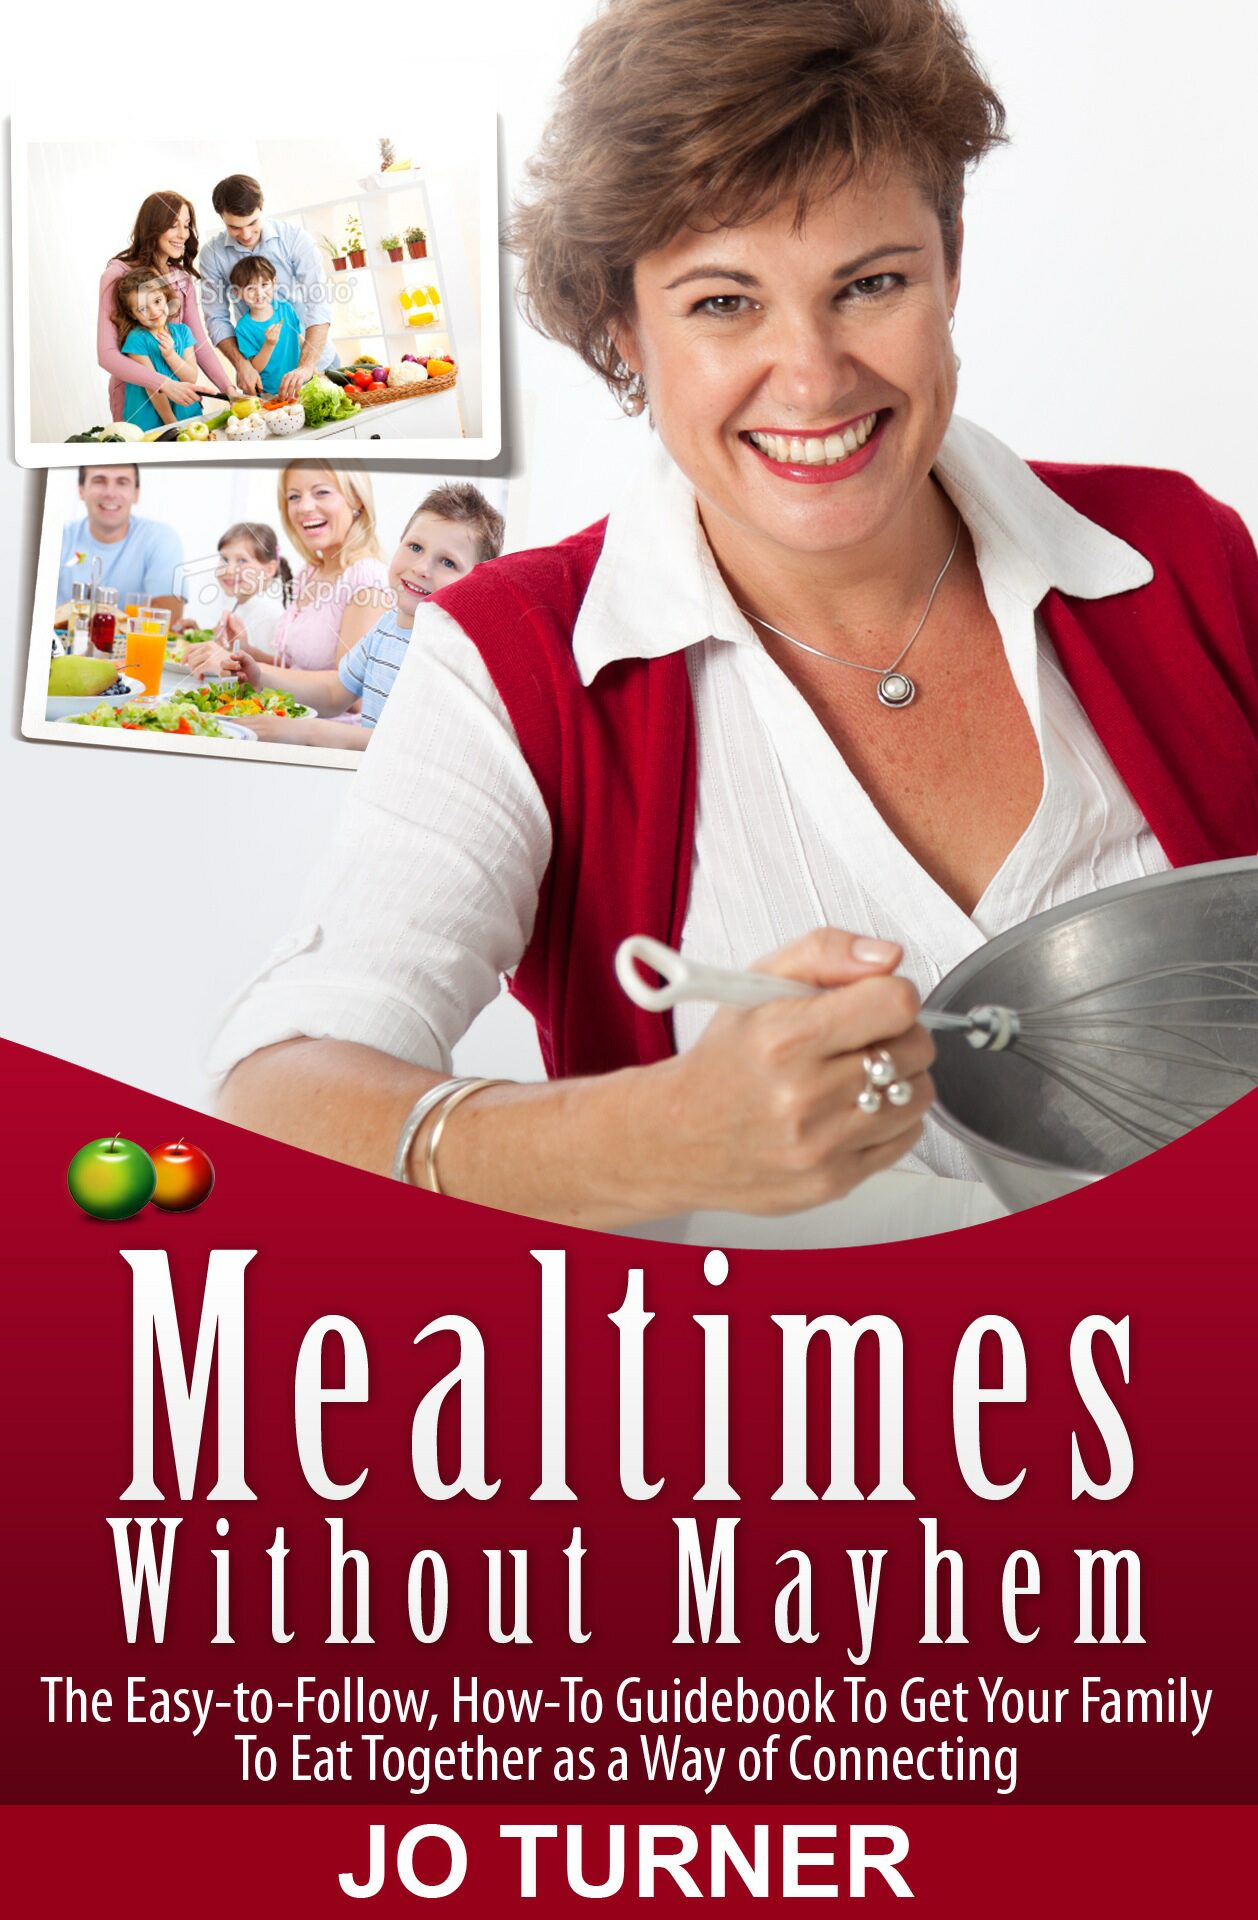 Mealtimes Without Mayhem / Jo Turner